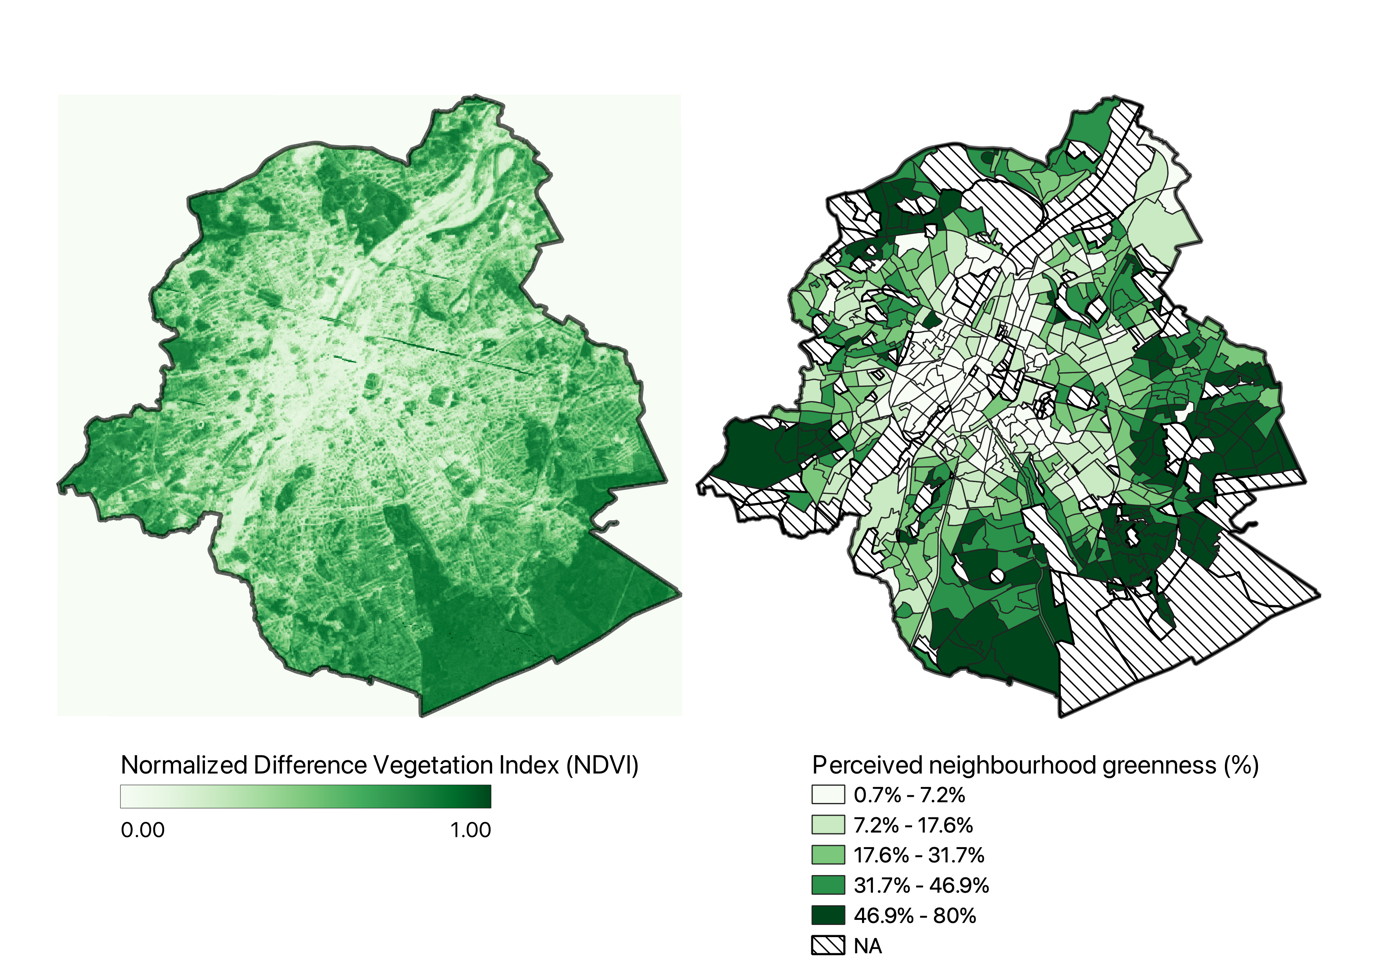 Sterfterisico door luchtvervuiling het hoogst in achterstandswijken in Brussel